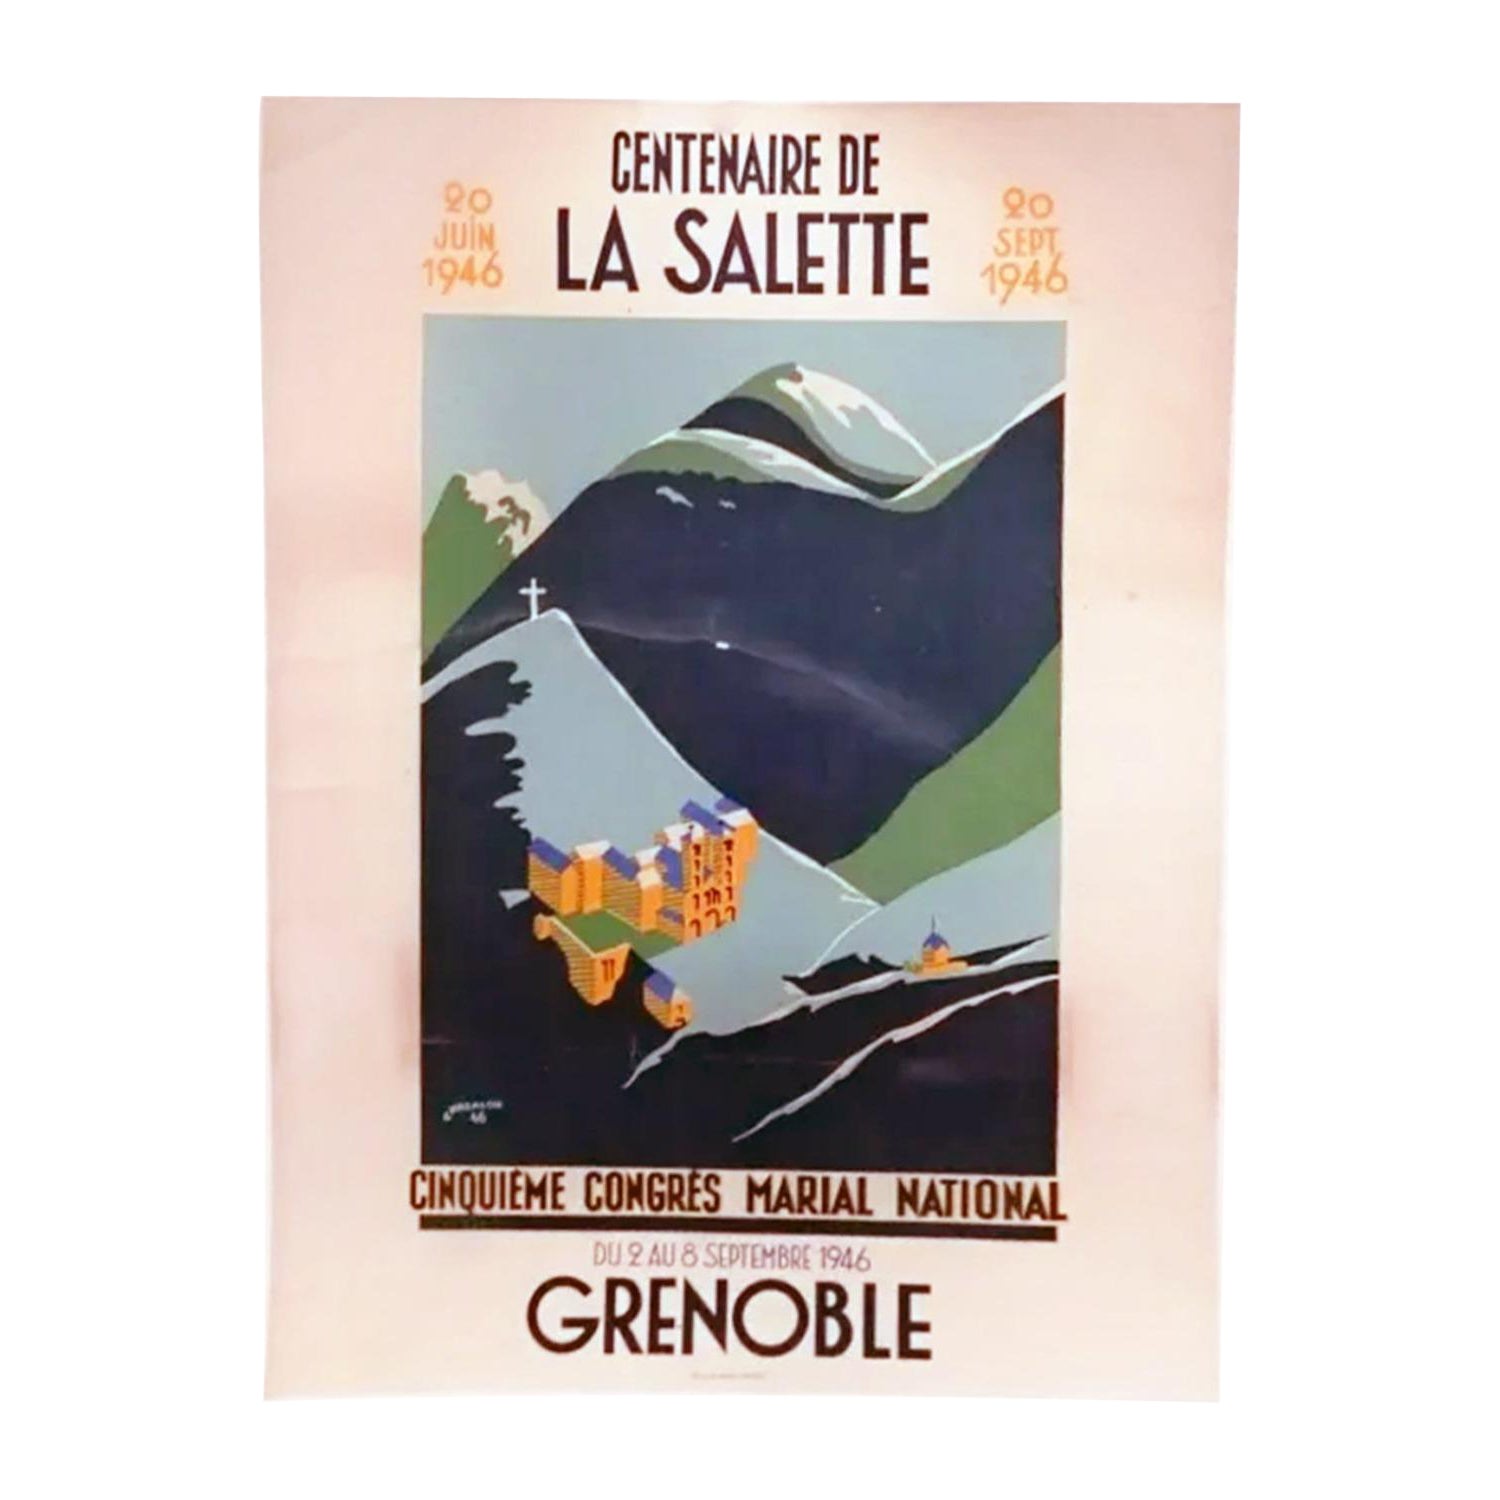 1946 Grenoble - Centenaire de La Salette Original Vintage Poster For Sale